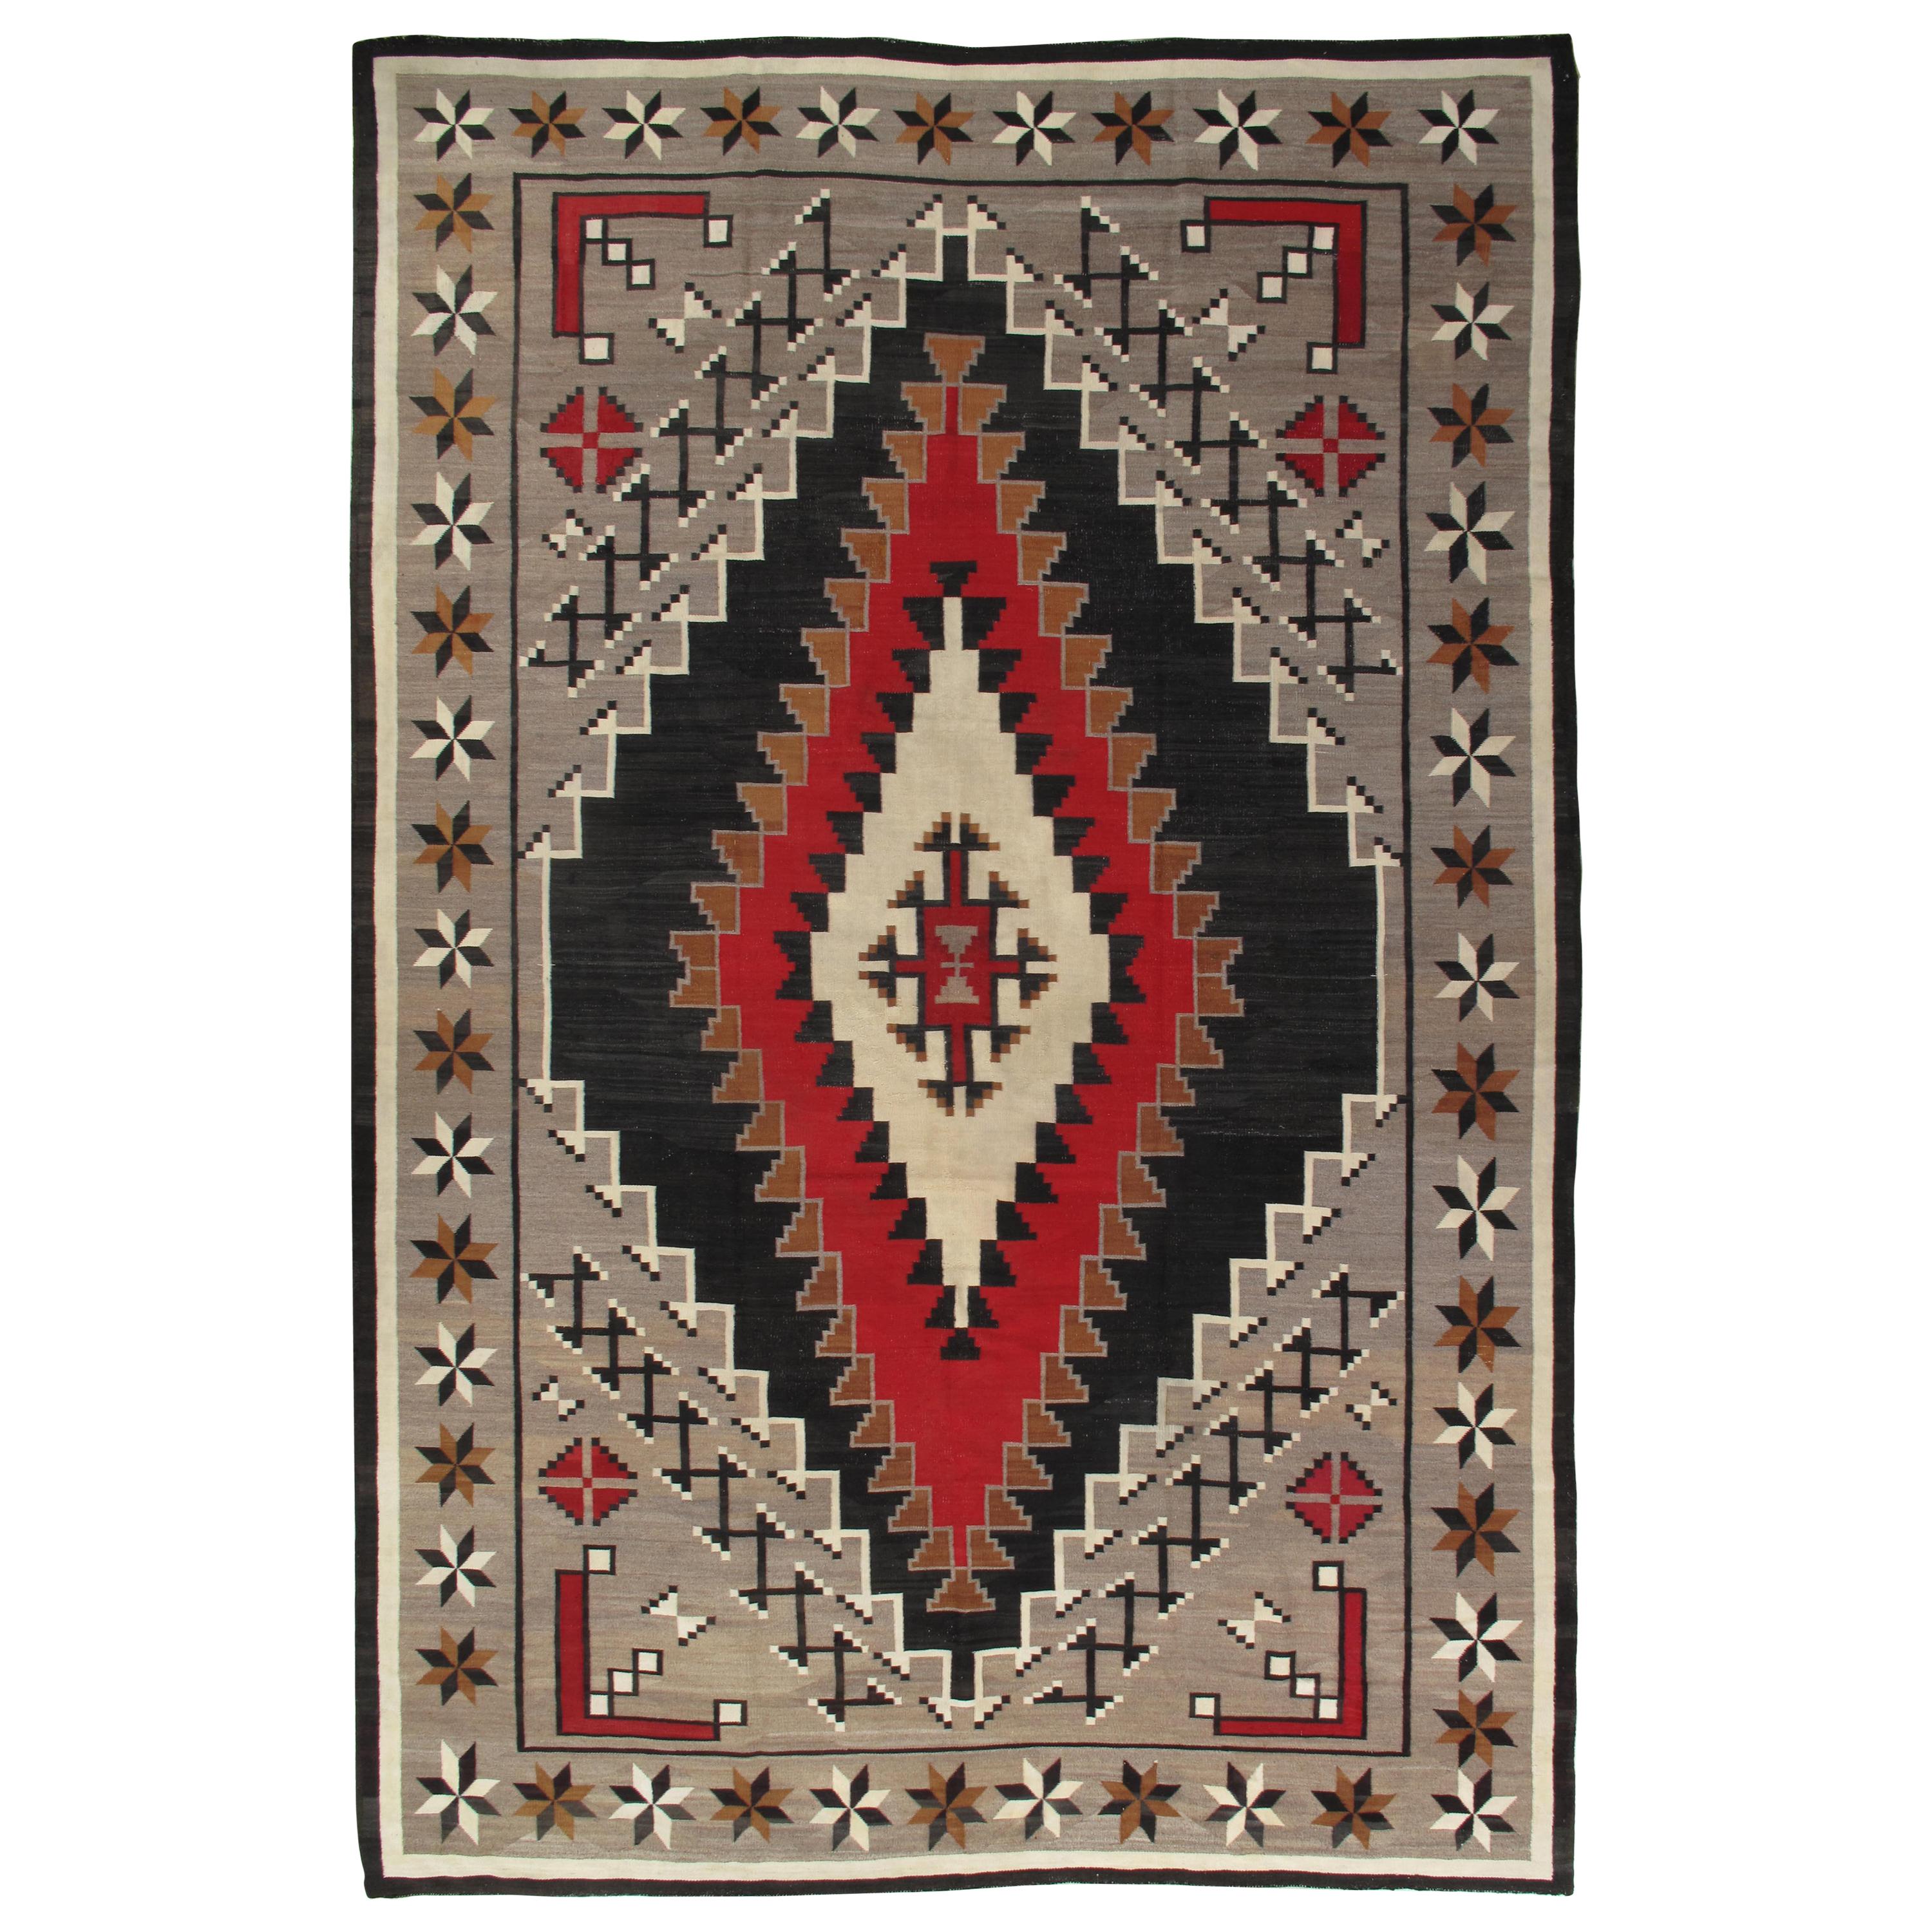 Grand tapis Navajo ancien éblouissant, fait à la main, en laine, beige, brun clair, gris et rouge